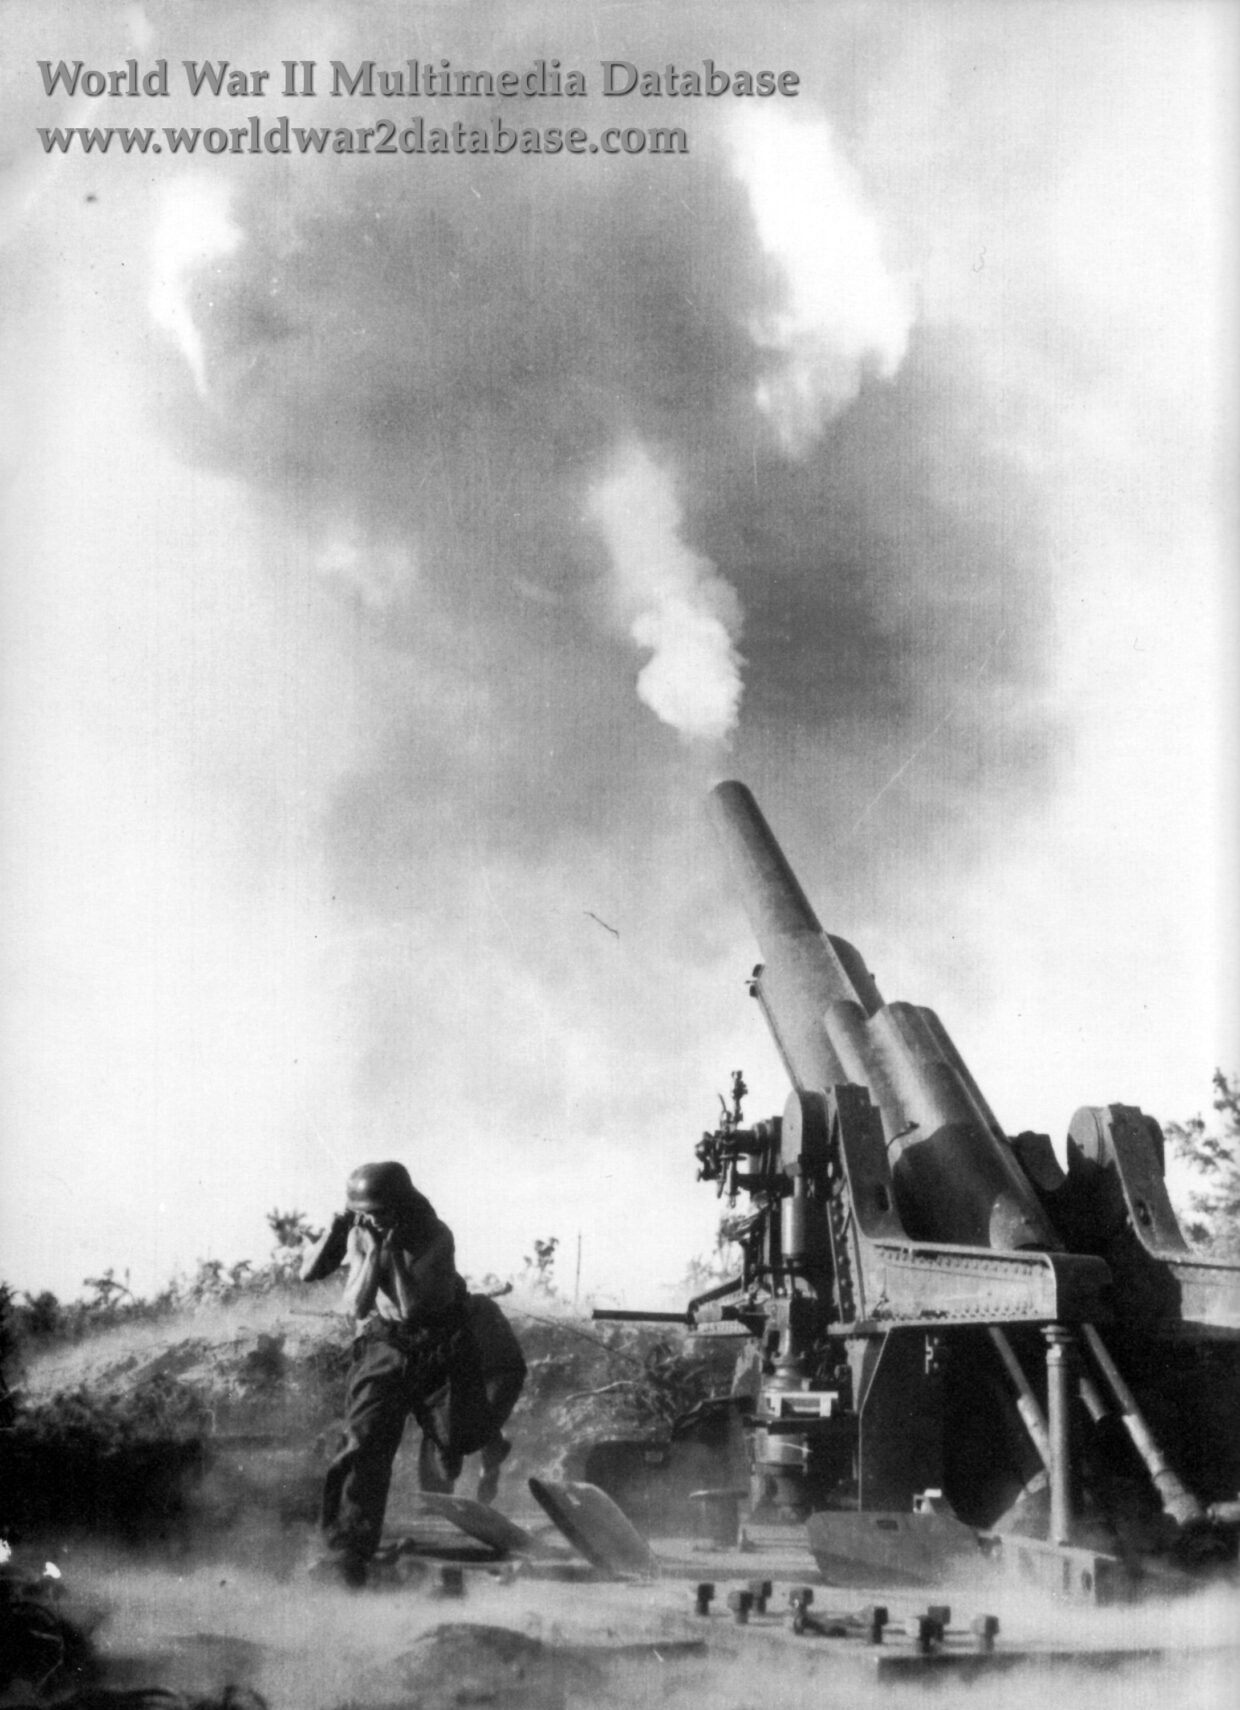 81Fourth Artillery Regiment Fires Howitzer Model 39